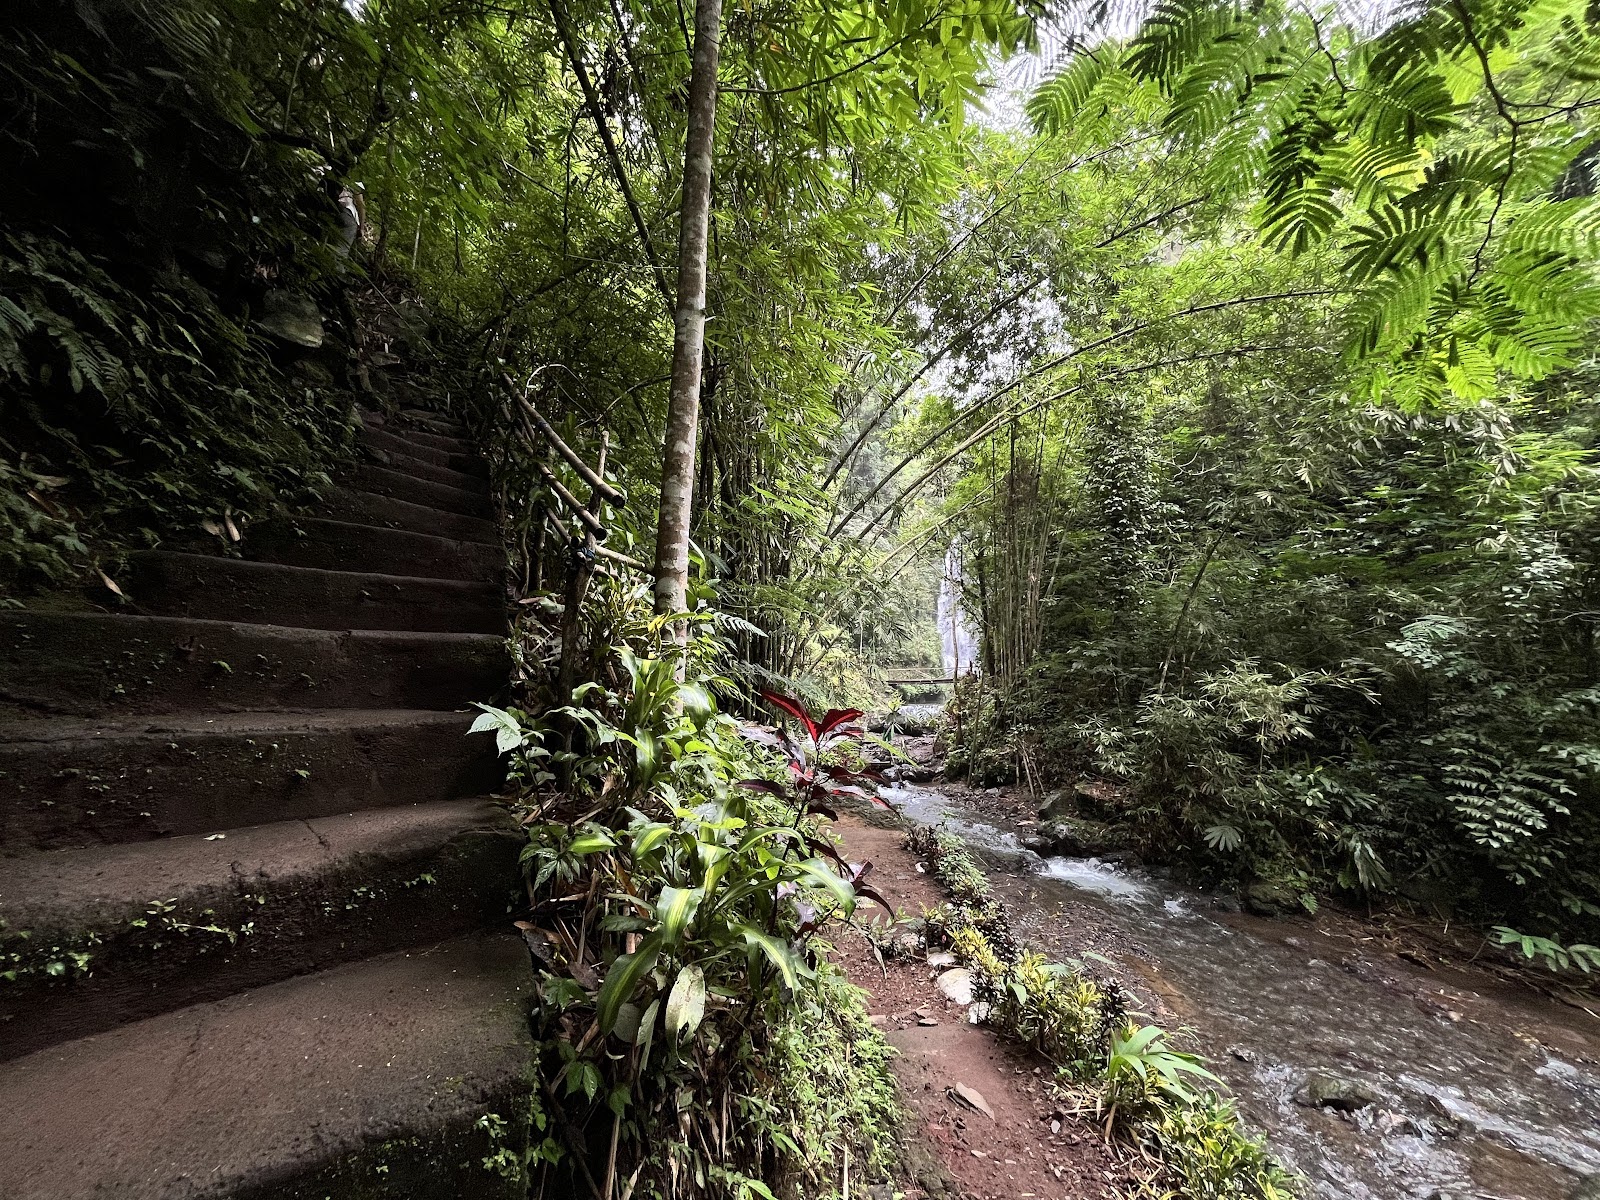 Labuhan Kebo Waterfalls